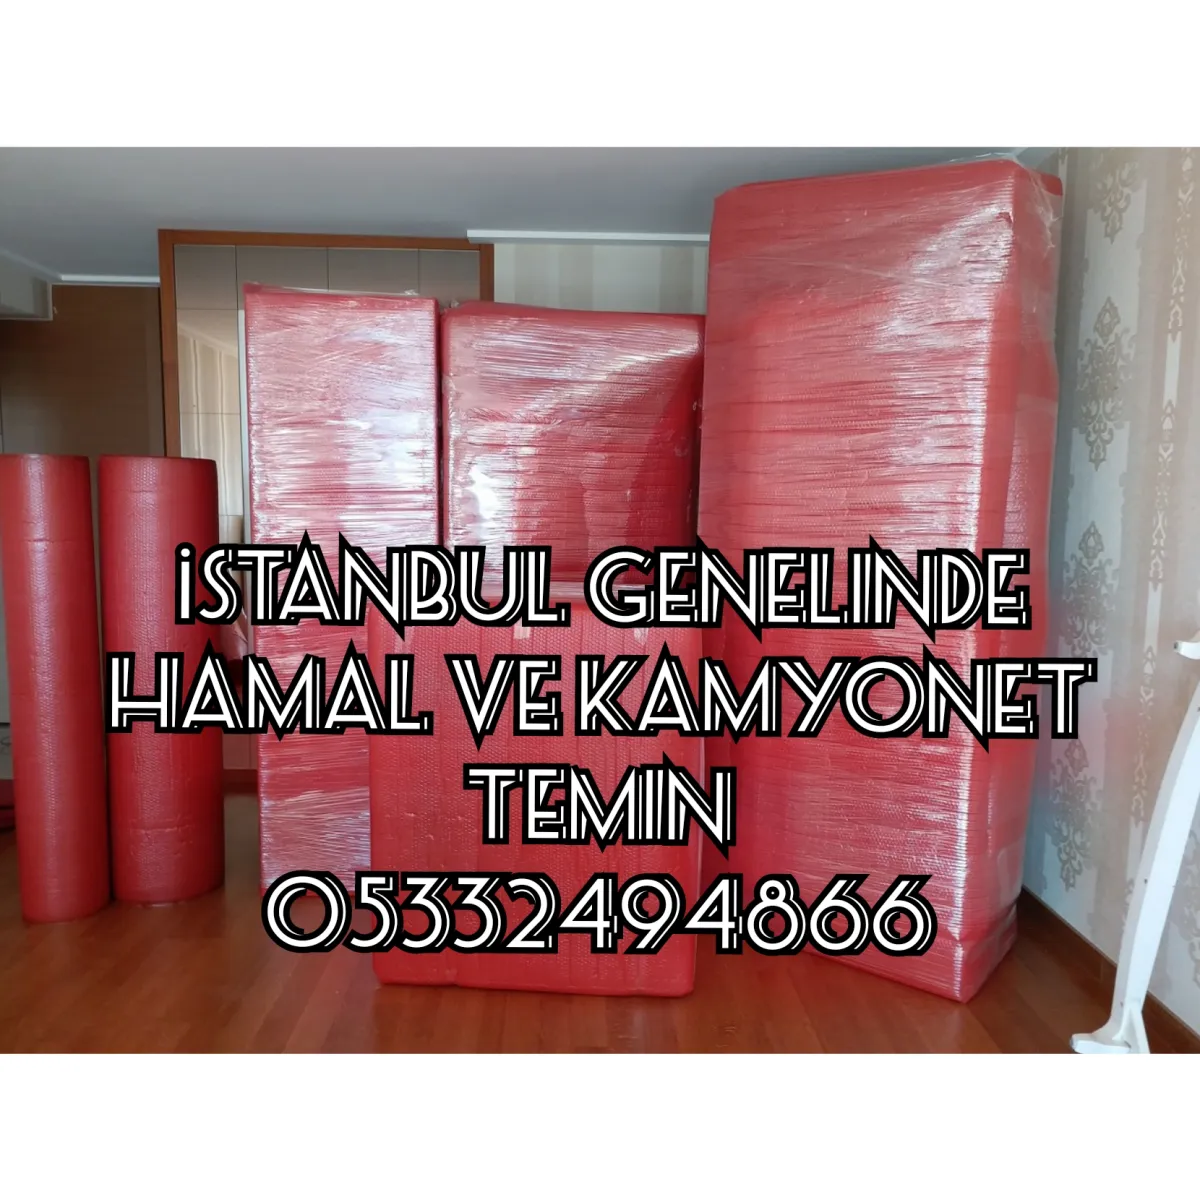 Bakırköy hamal 05332494866